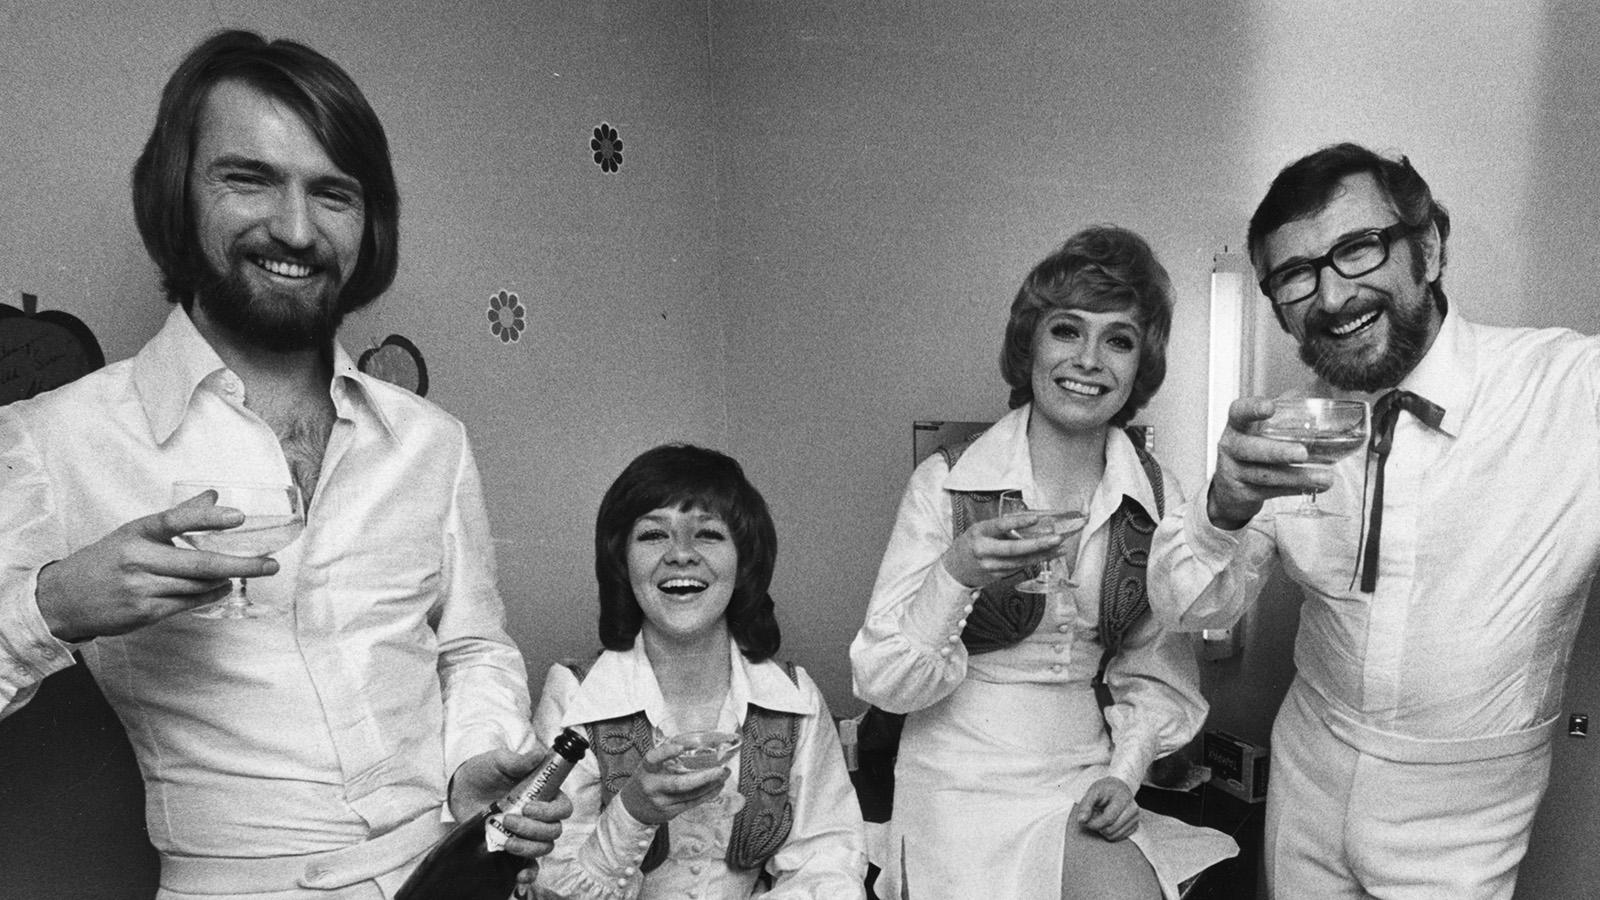 Medlemmarna i musikgruppen Family Four fr v: Pierre Isacsson, Agneta Munther, Marie Bergman och Berndt Öst skålar i champagne efter att ha vunnit Melodifestivalen för andra året i rad, då med melodin "Härliga sommardag" i Malmö 12:e februari 1972.